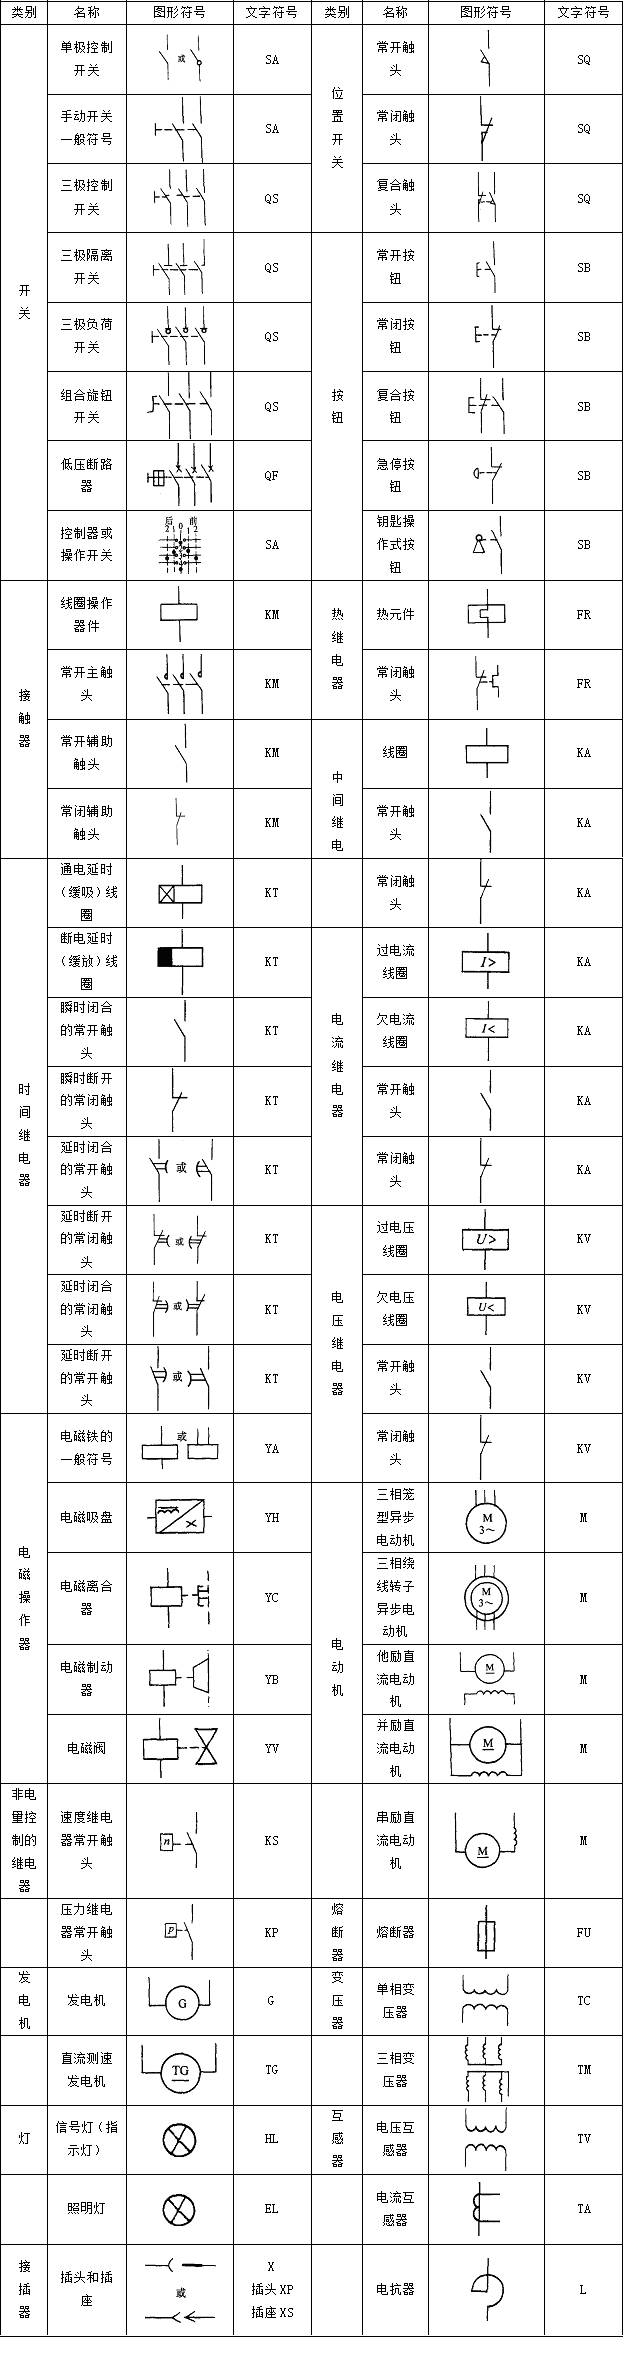 中国工控plc控制电路设计中常用的电气符号和文字符号